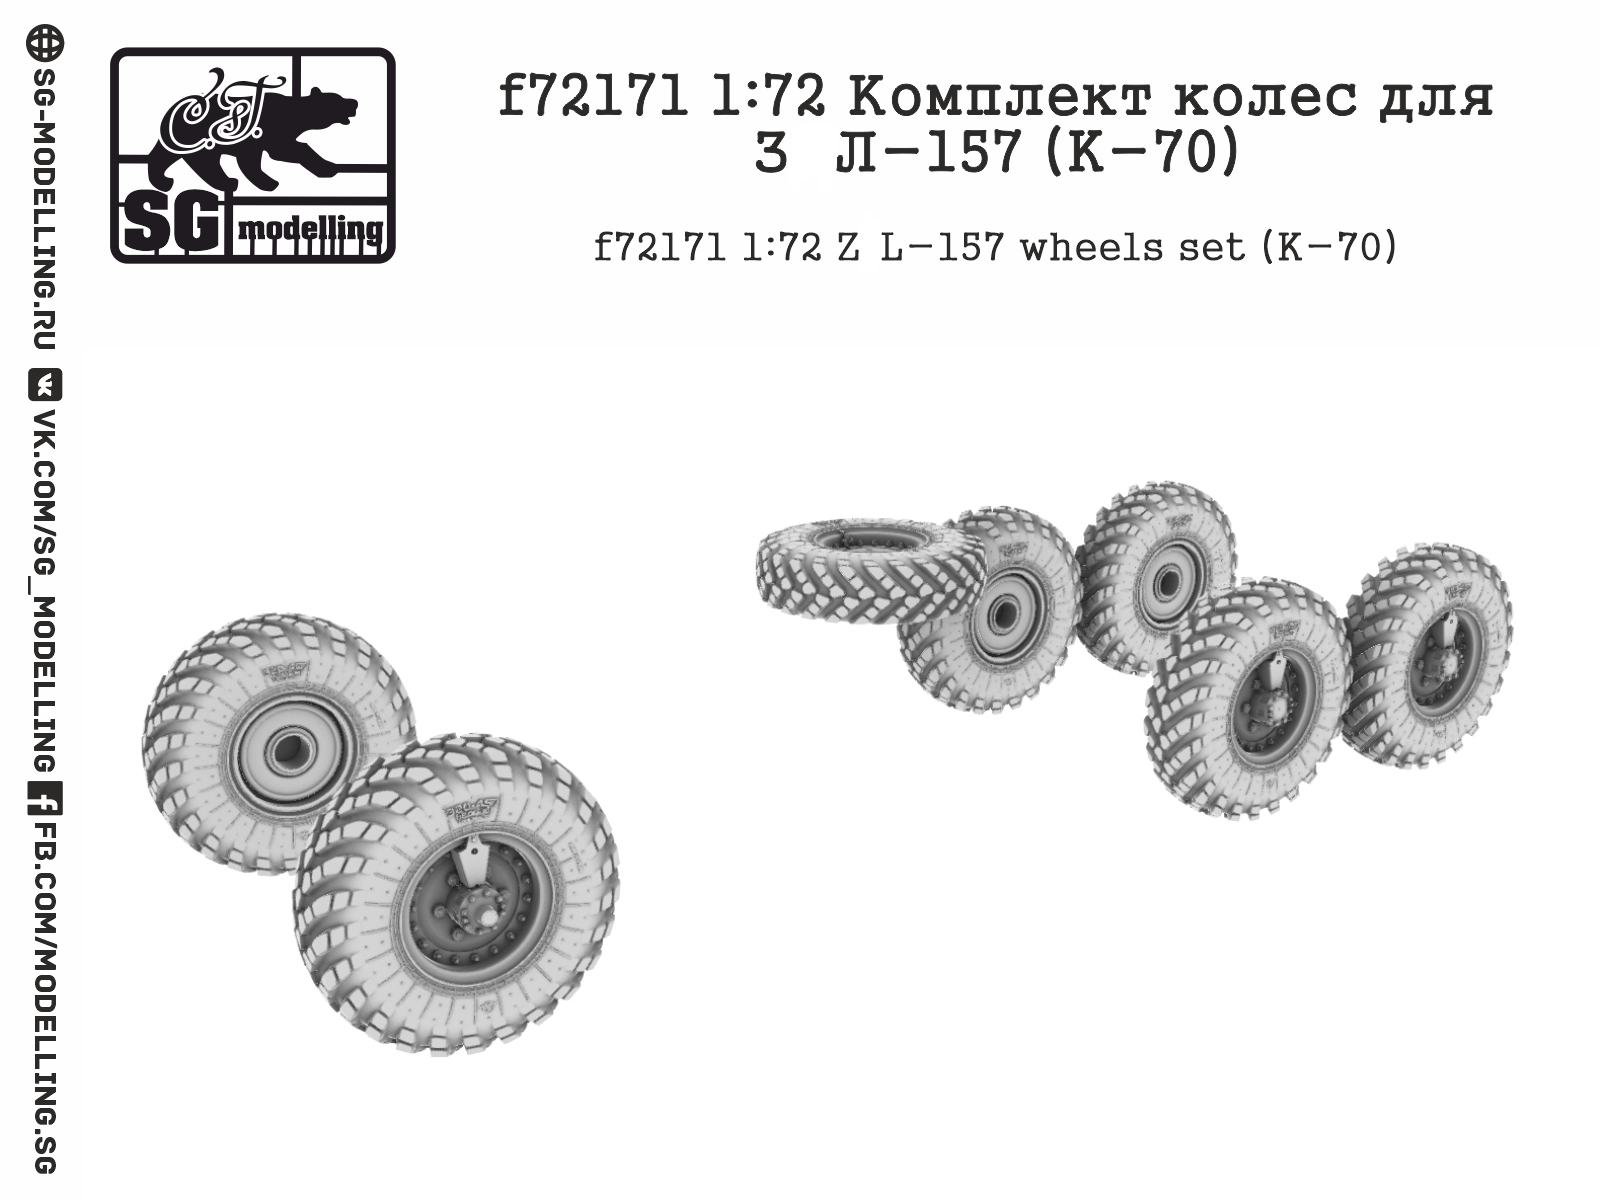 f72171  дополнения из смолы  Комплект колес для З&Л-157 (K-70)  (1:72)